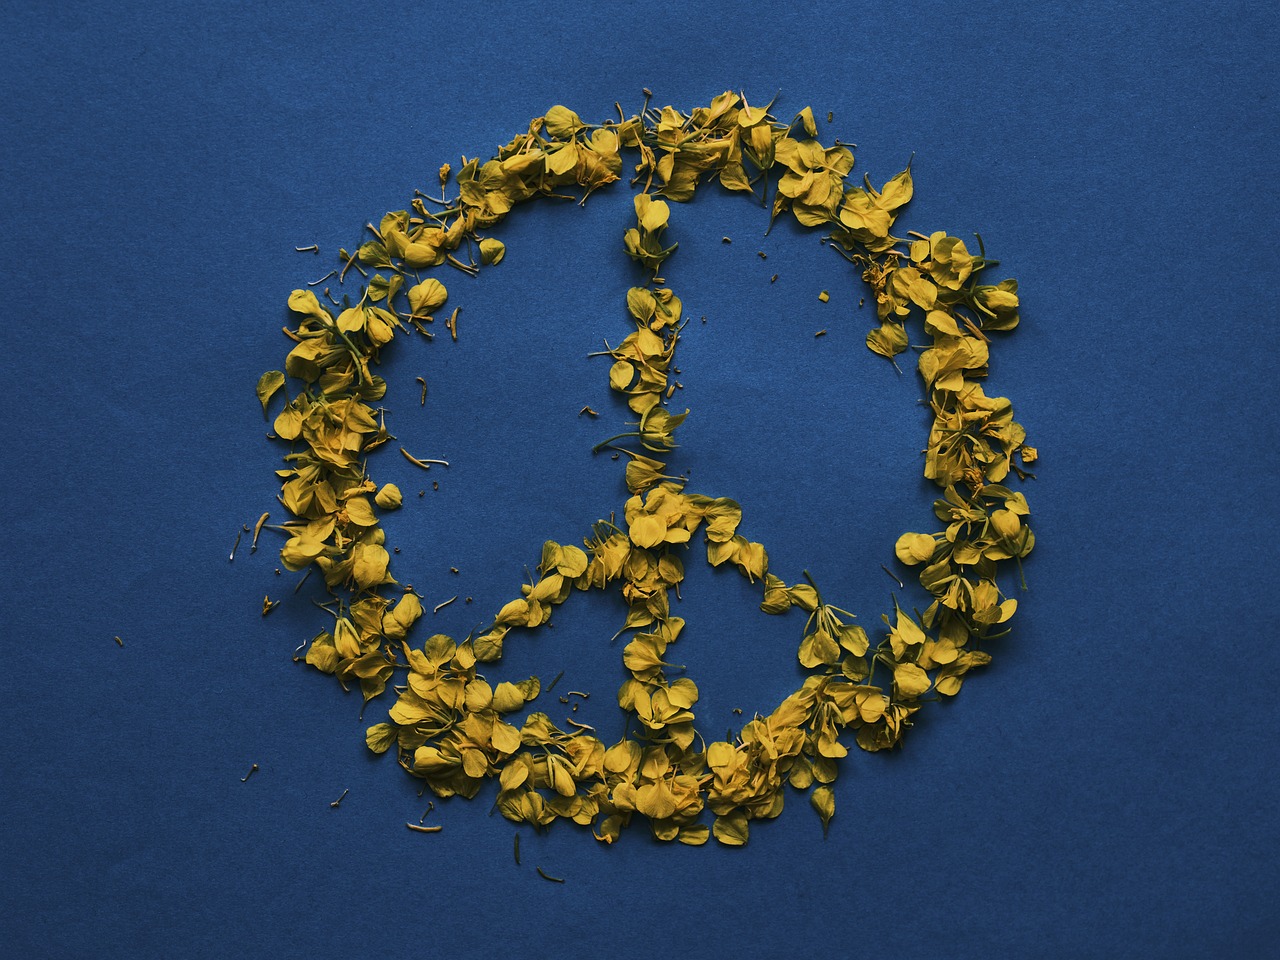 Peace Ukraine